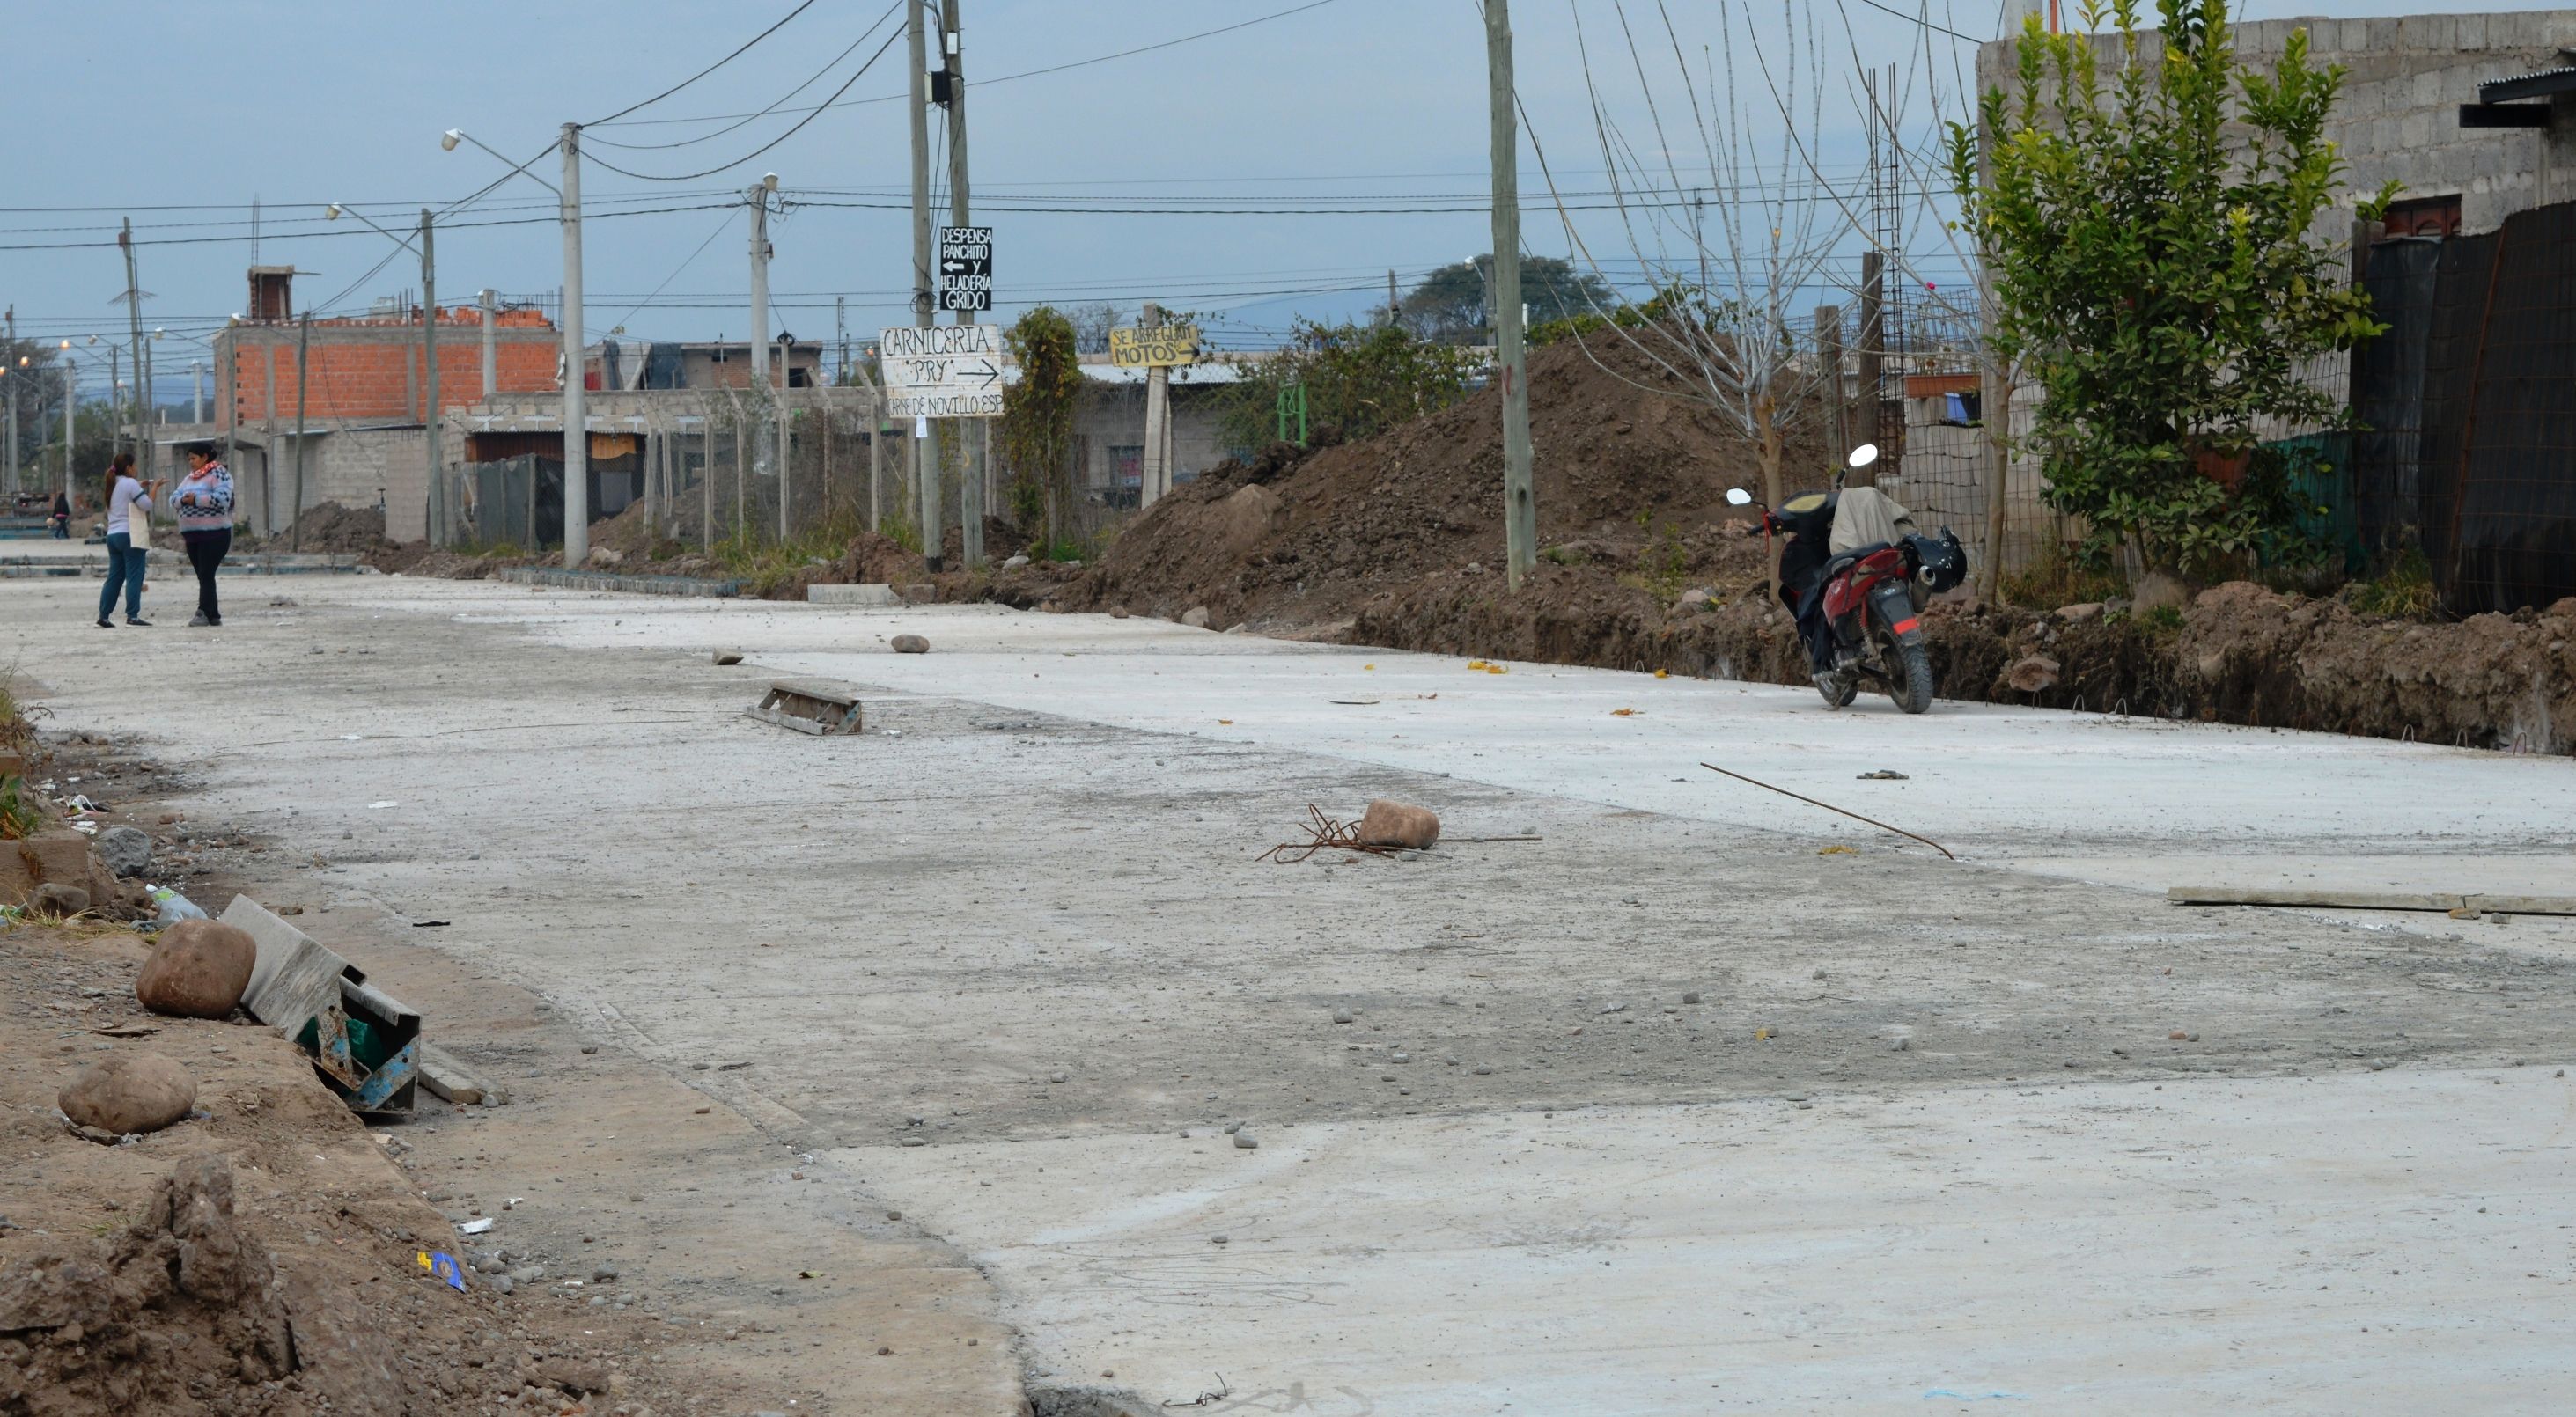 La avenida Calilegua se está pavimentando en Palpalá. Ya se paviemtnó la avenida Pilar Bermúdes, de ingreso al barrio, y luego continuarán las calles que conforman el circuito del colectivo que allí ingresa.